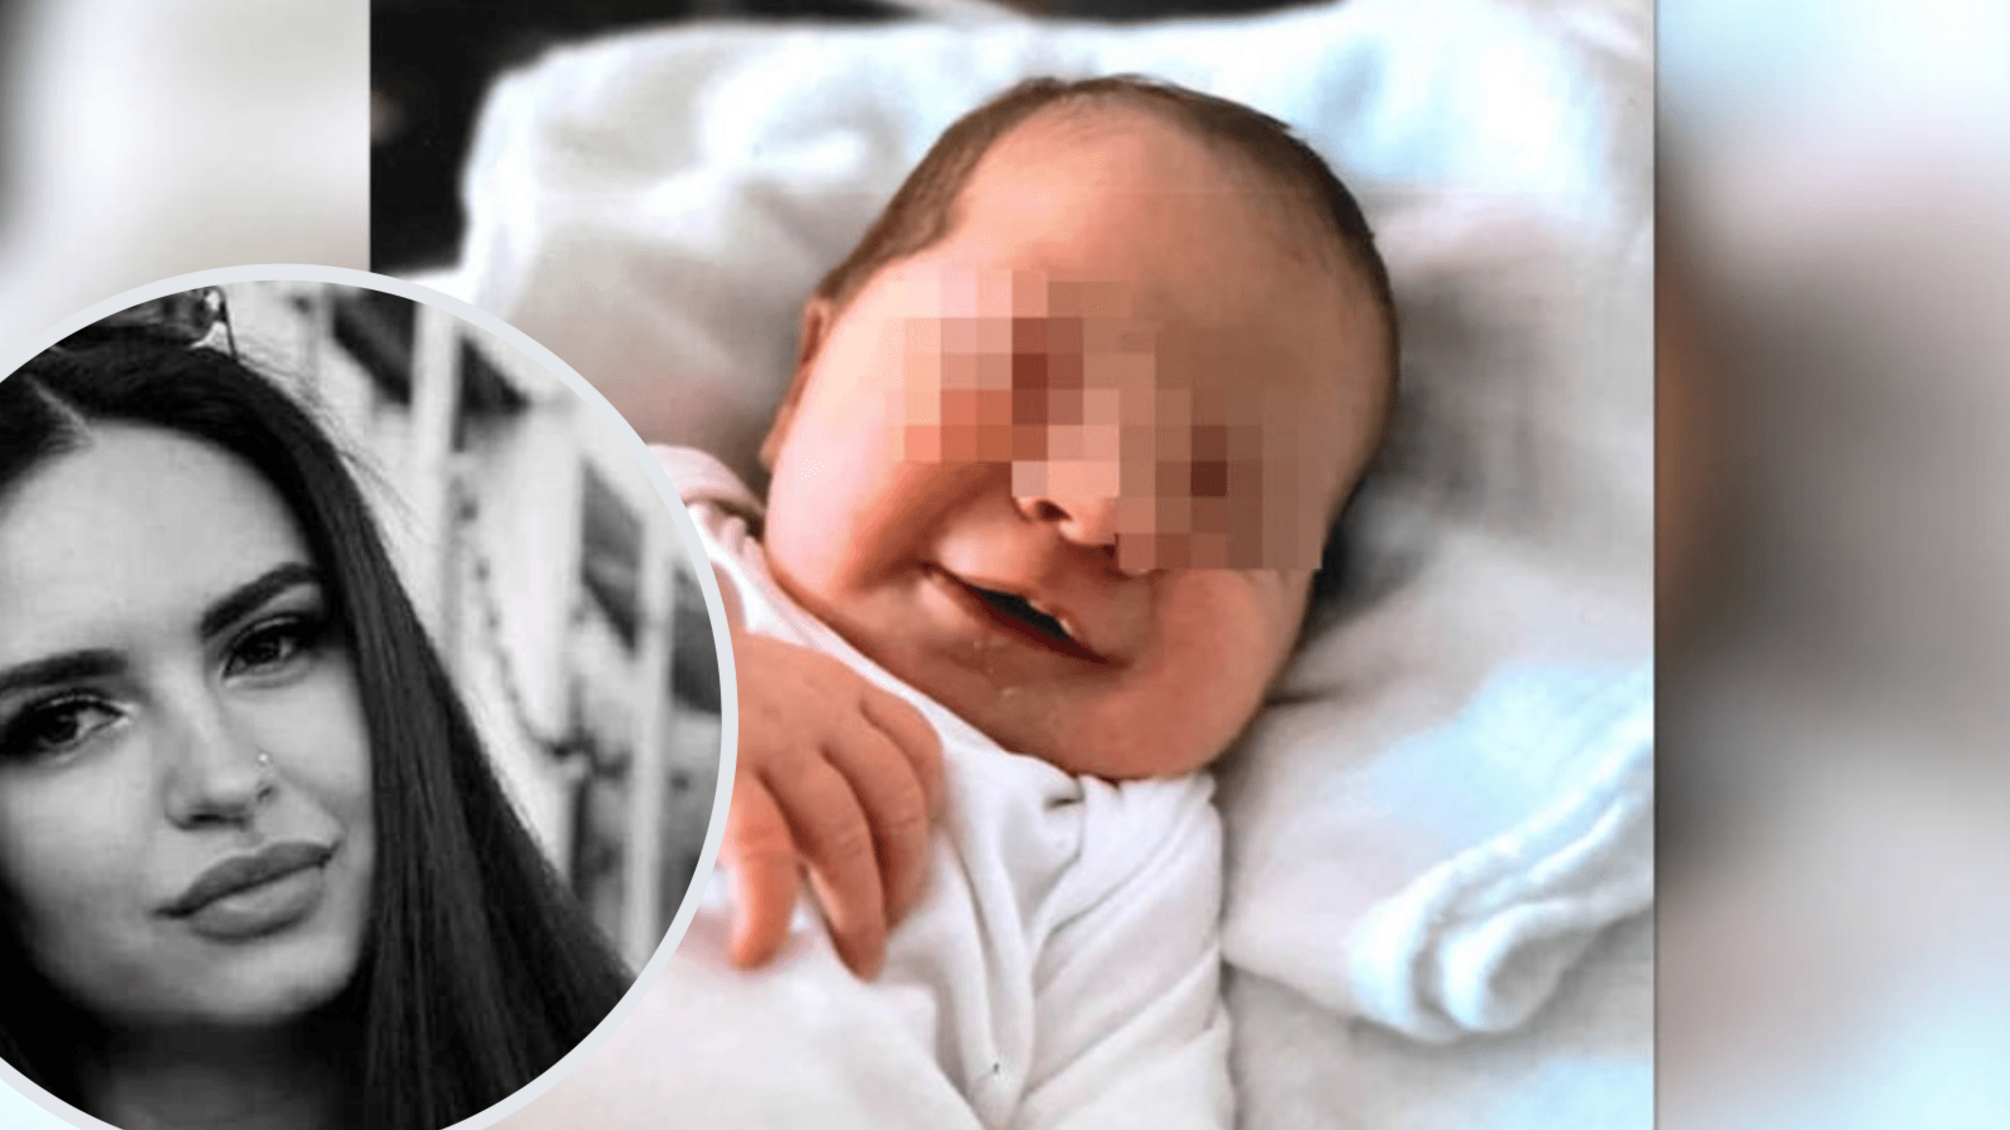 Двое россиян убили украинку и ее мать в Германии, чтобы похитить младенца